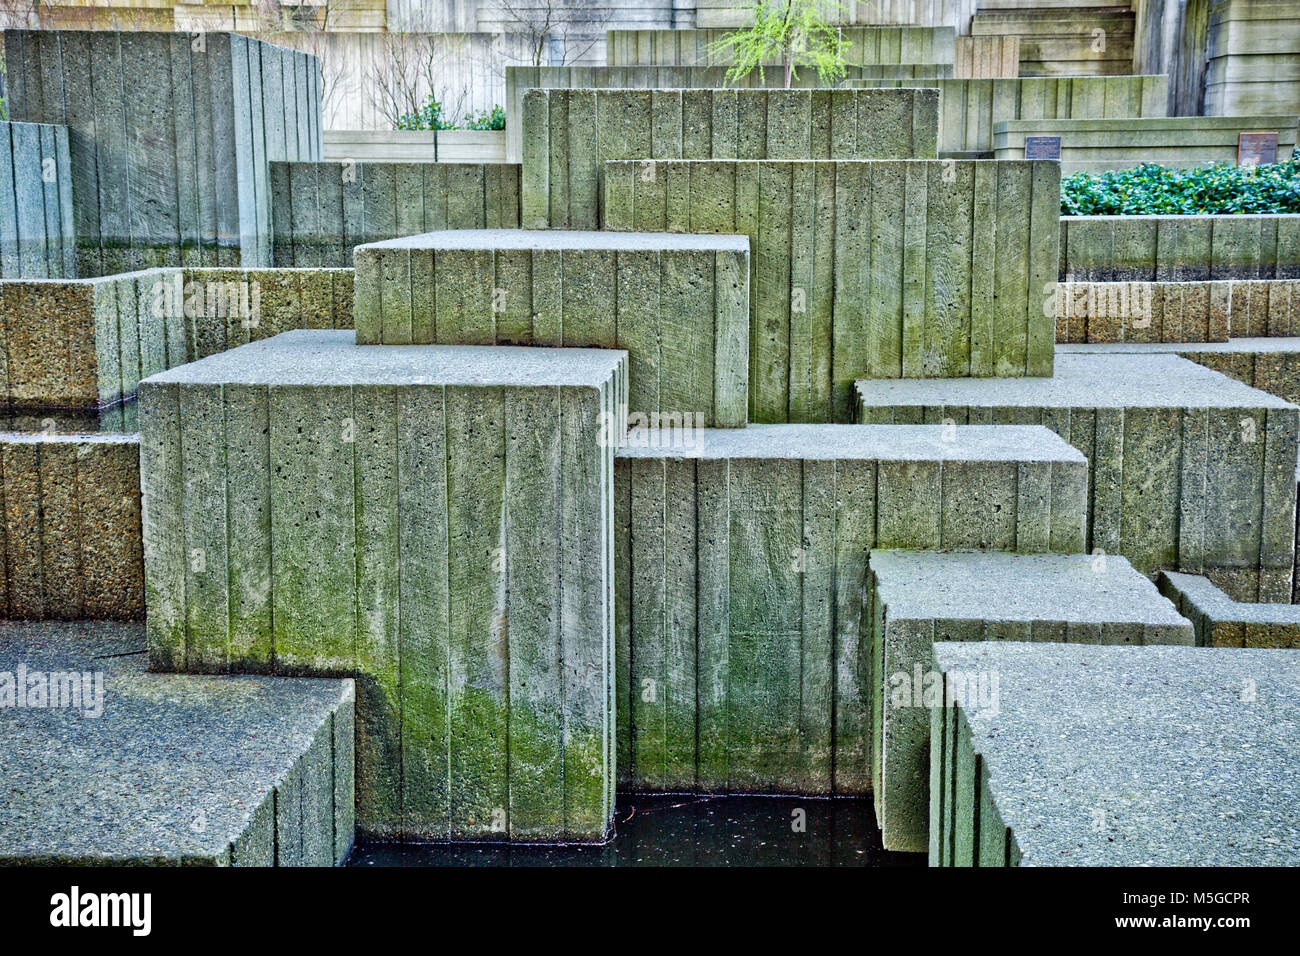 WASHINGTON - Betonsteine mit zahlreichen Linien und Winkel schaffen interessante Formen und Texturen in der Schlucht Wasserfall Gegend von Seattle. Stockfoto